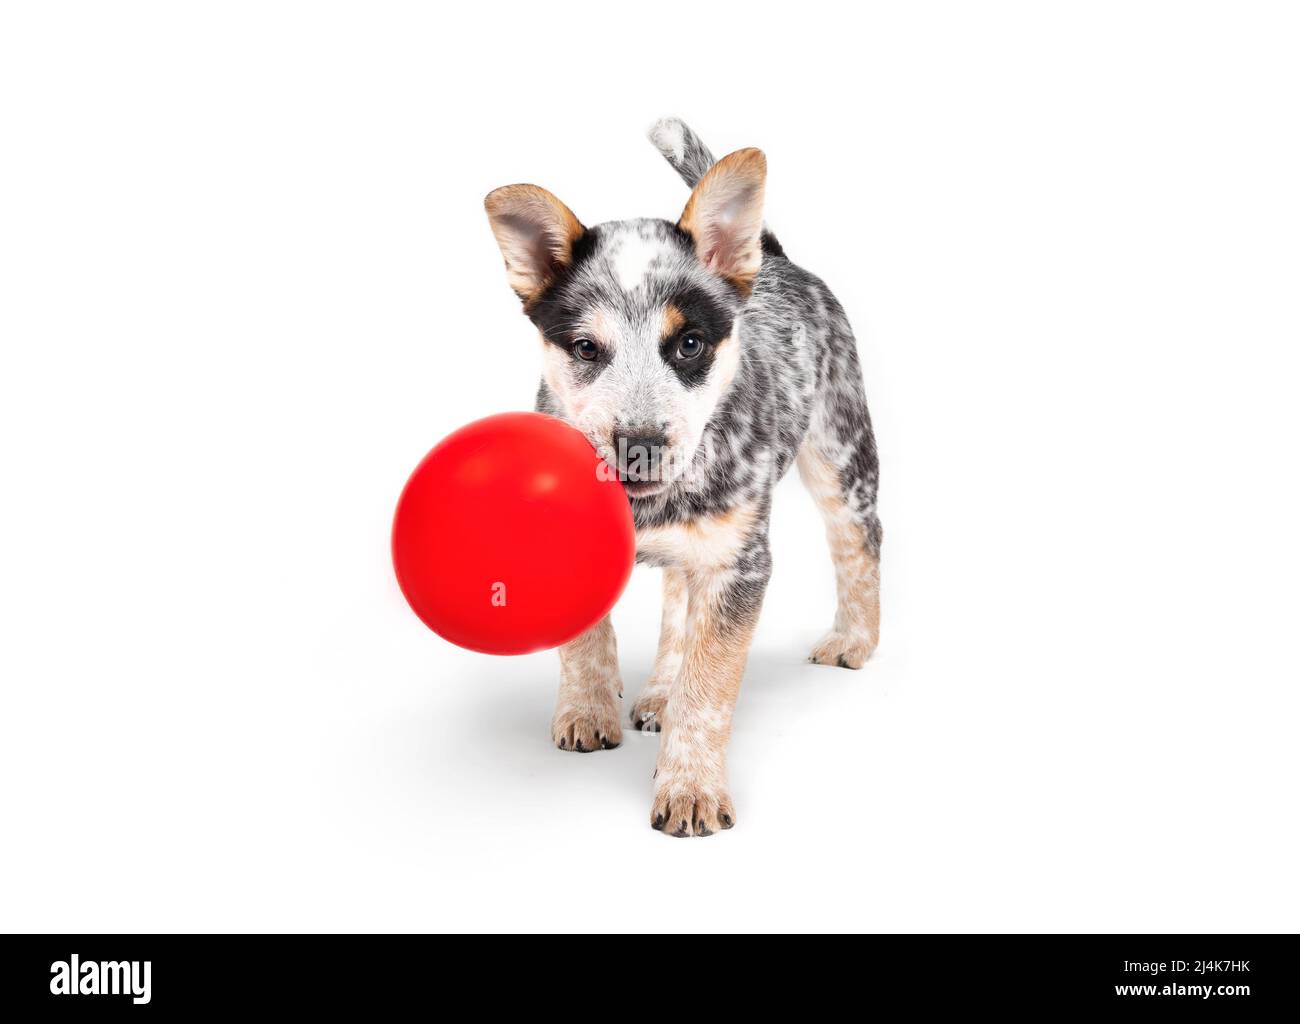 Welpe mit Ballon im Mund, während sie steht und die Kamera anschaut. 9 Wochen alter Welpenhund mit verspielter oder verschmitzter Körpersprache. Australischer Heeler oder Stockfoto